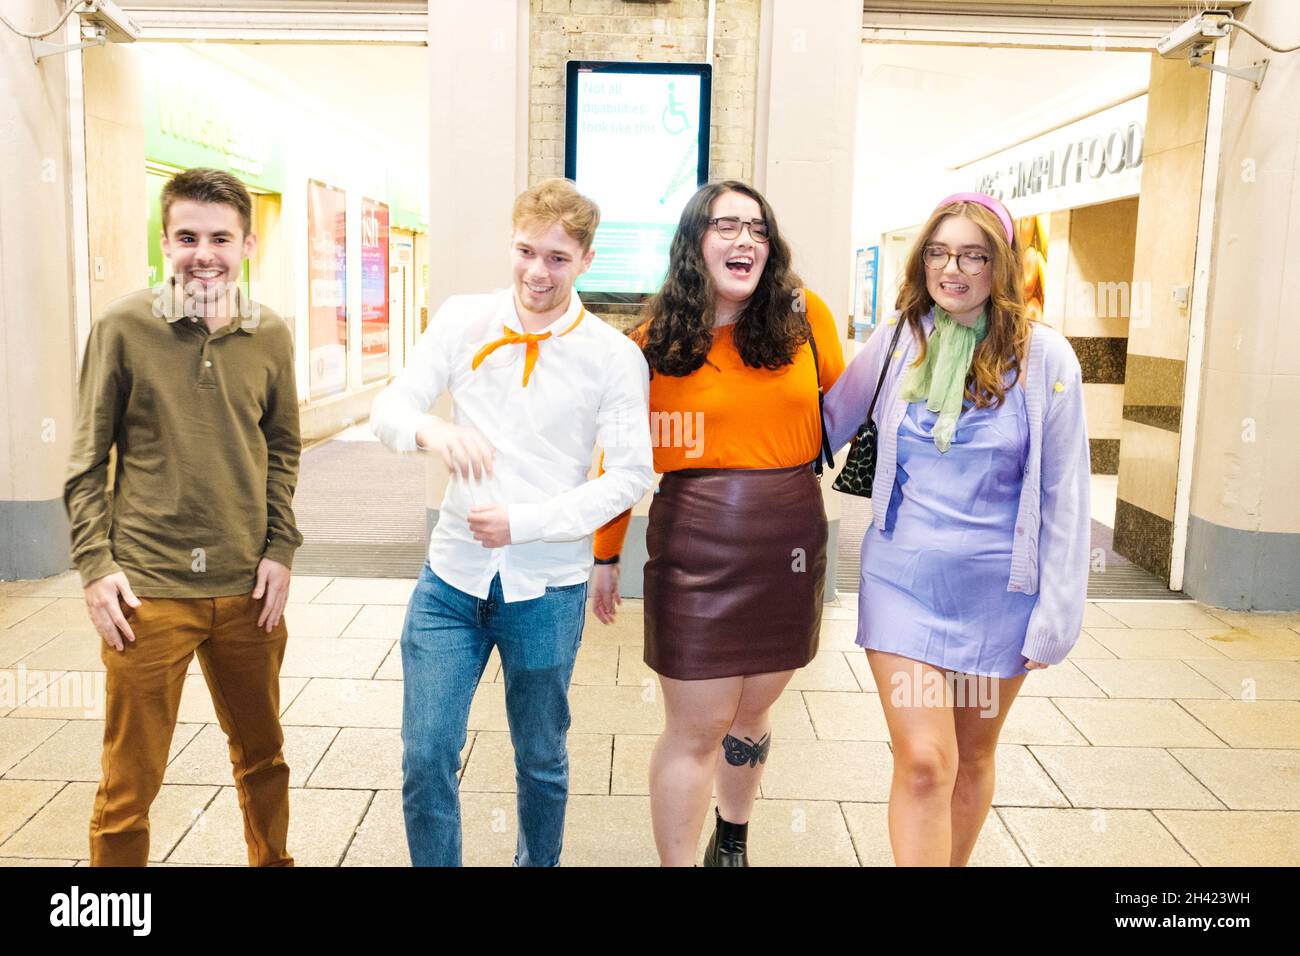 Dopo che Halloween fu cancellato nel 2020 a causa di un blocco messo in atto, i londinesi tornarono a vestirsi come loro personaggi e costumi preferiti Foto Stock